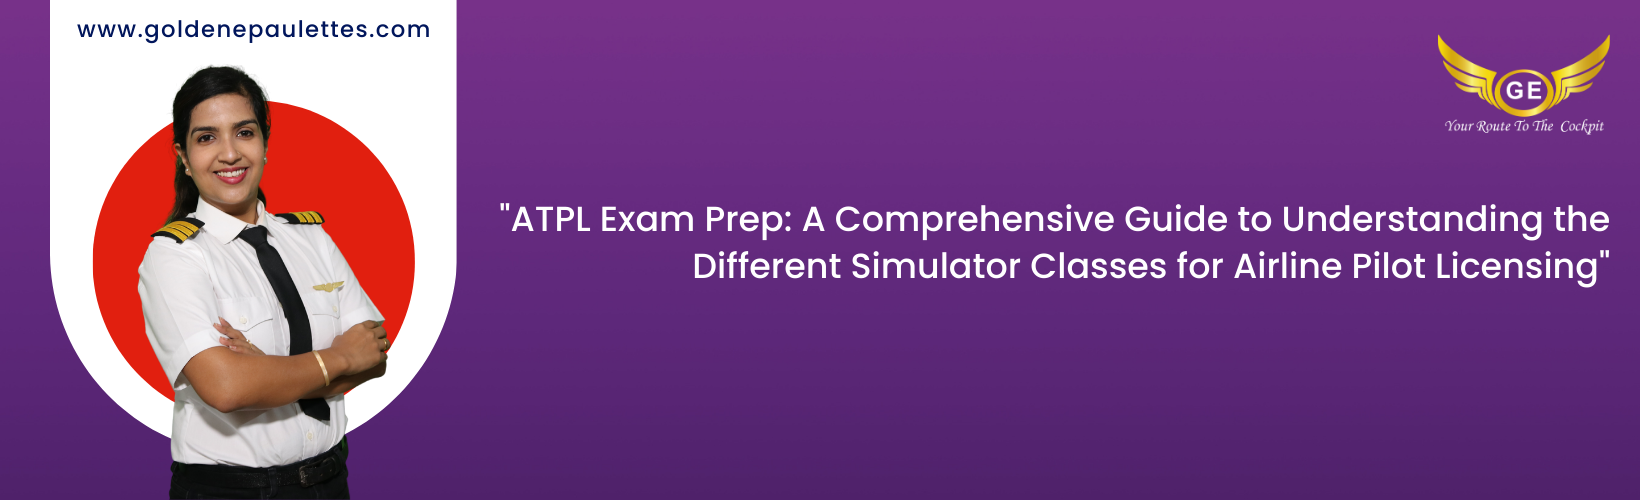 Exam Requirements for ATPL Simulator Classes